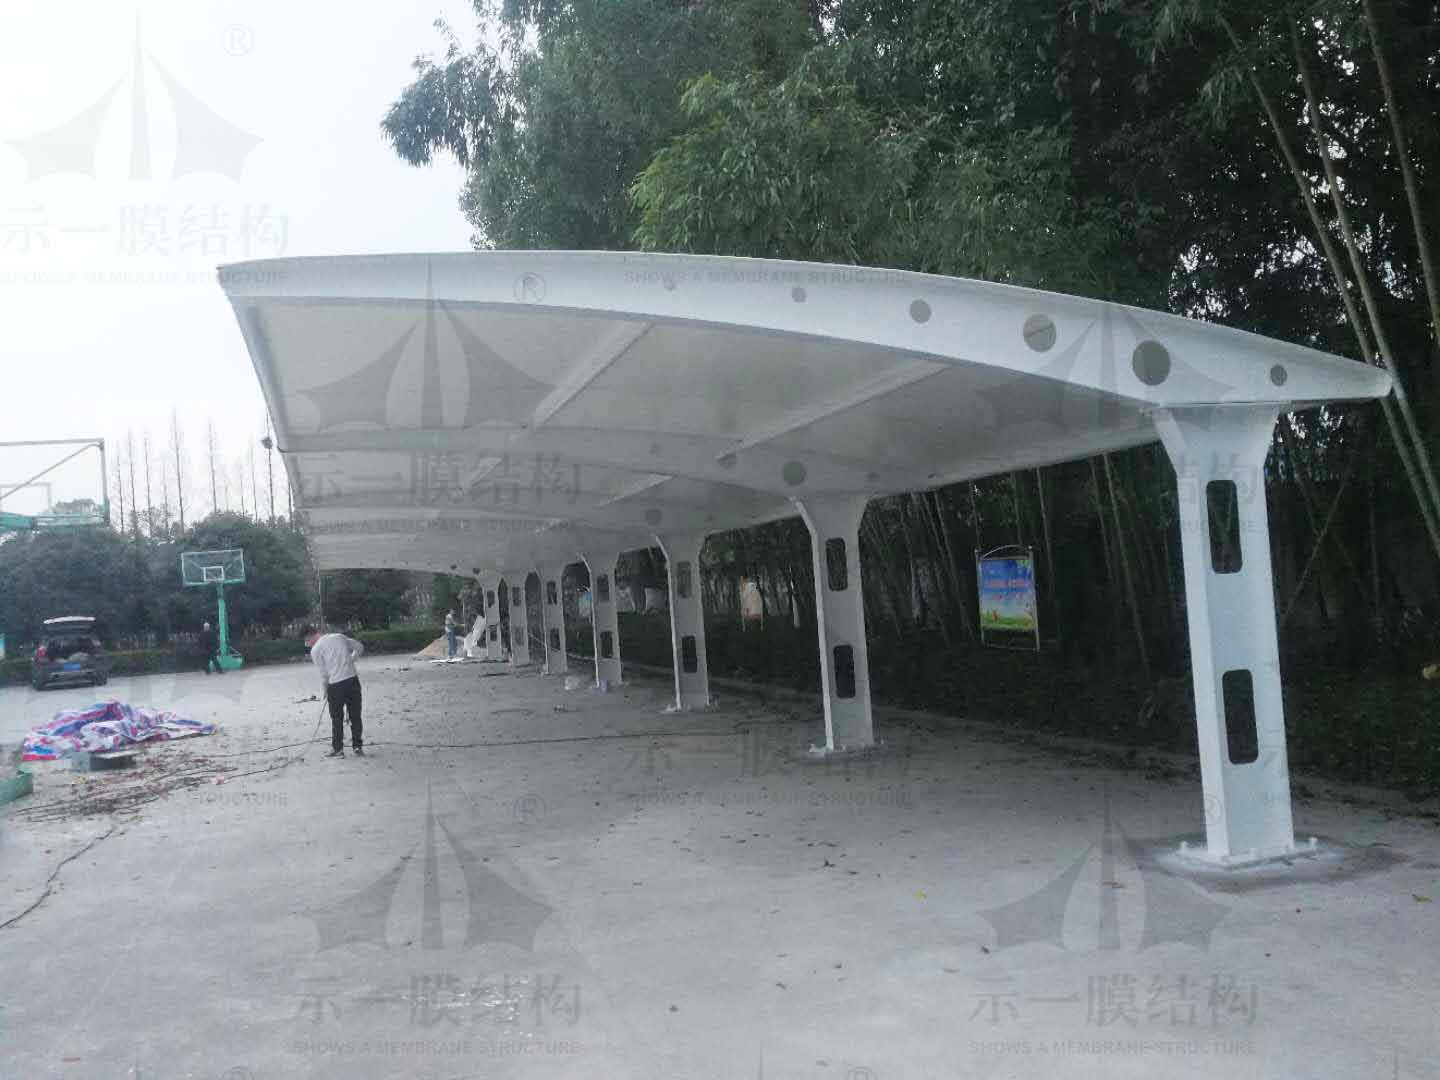 上海示一膜结构桐乡市崇福镇五丰村村民委员会膜结构车棚